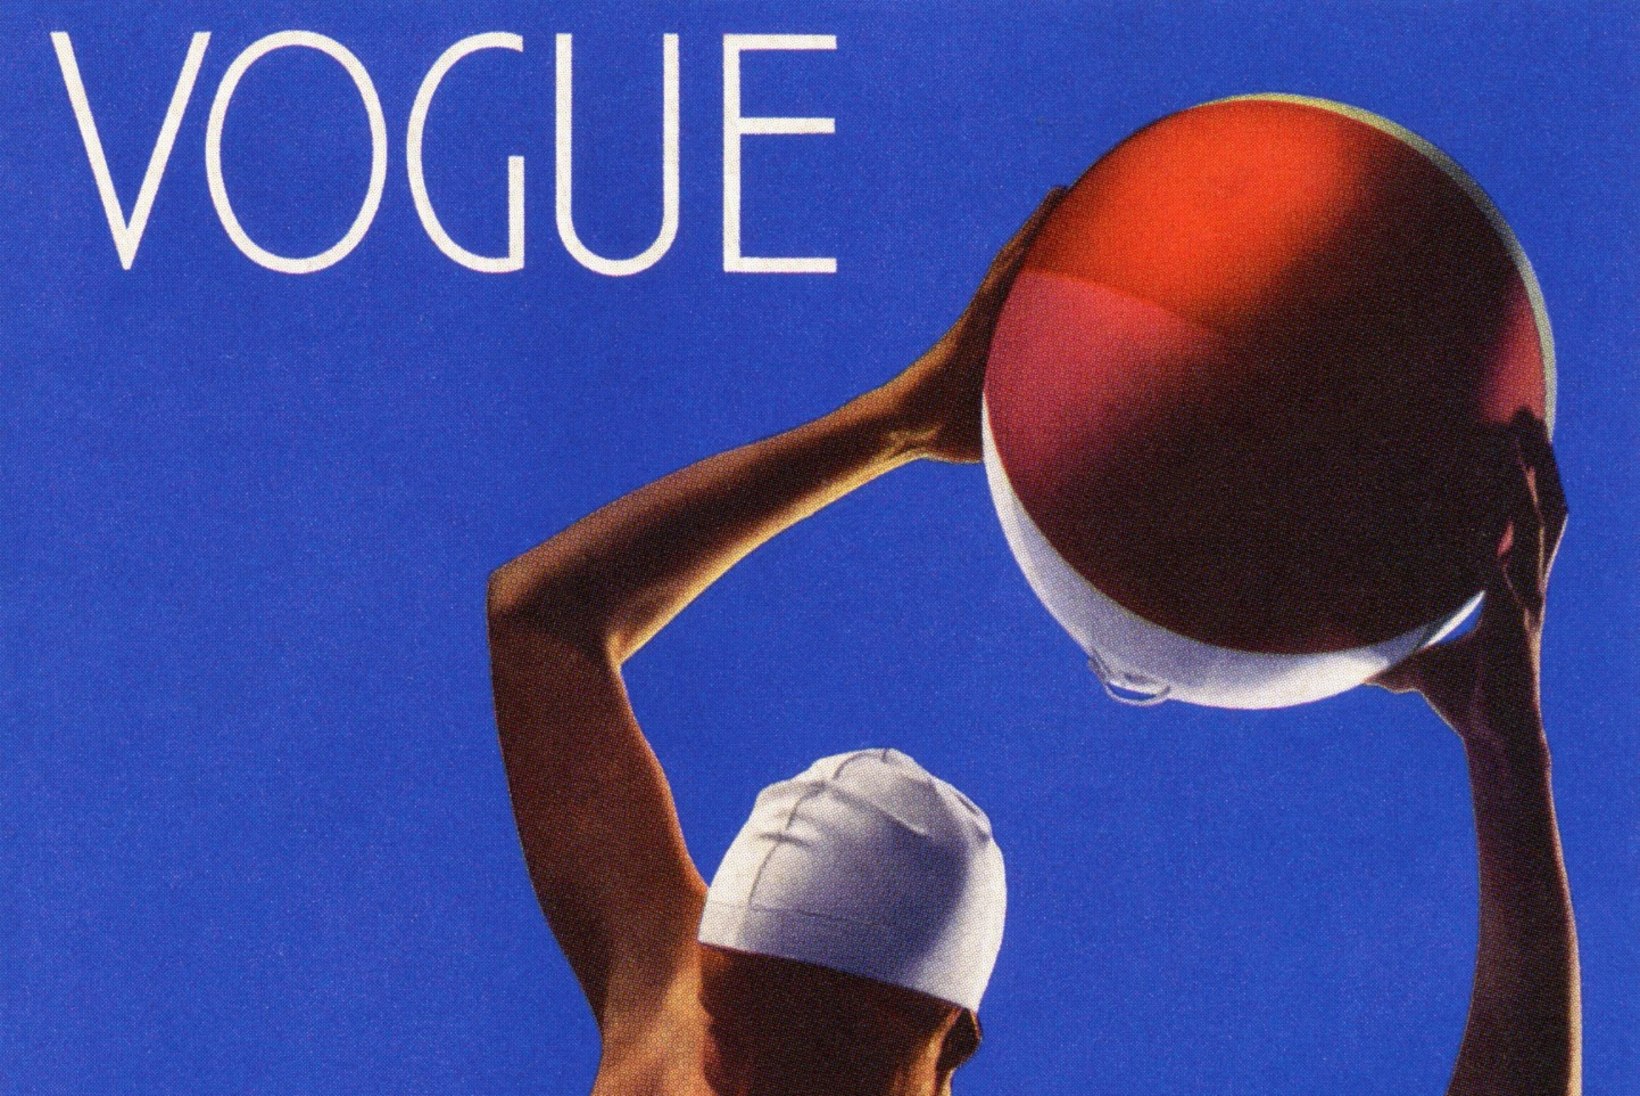 Vogue – kuidas rikkurite ajakirjast sai ülemaailmne moepiibel